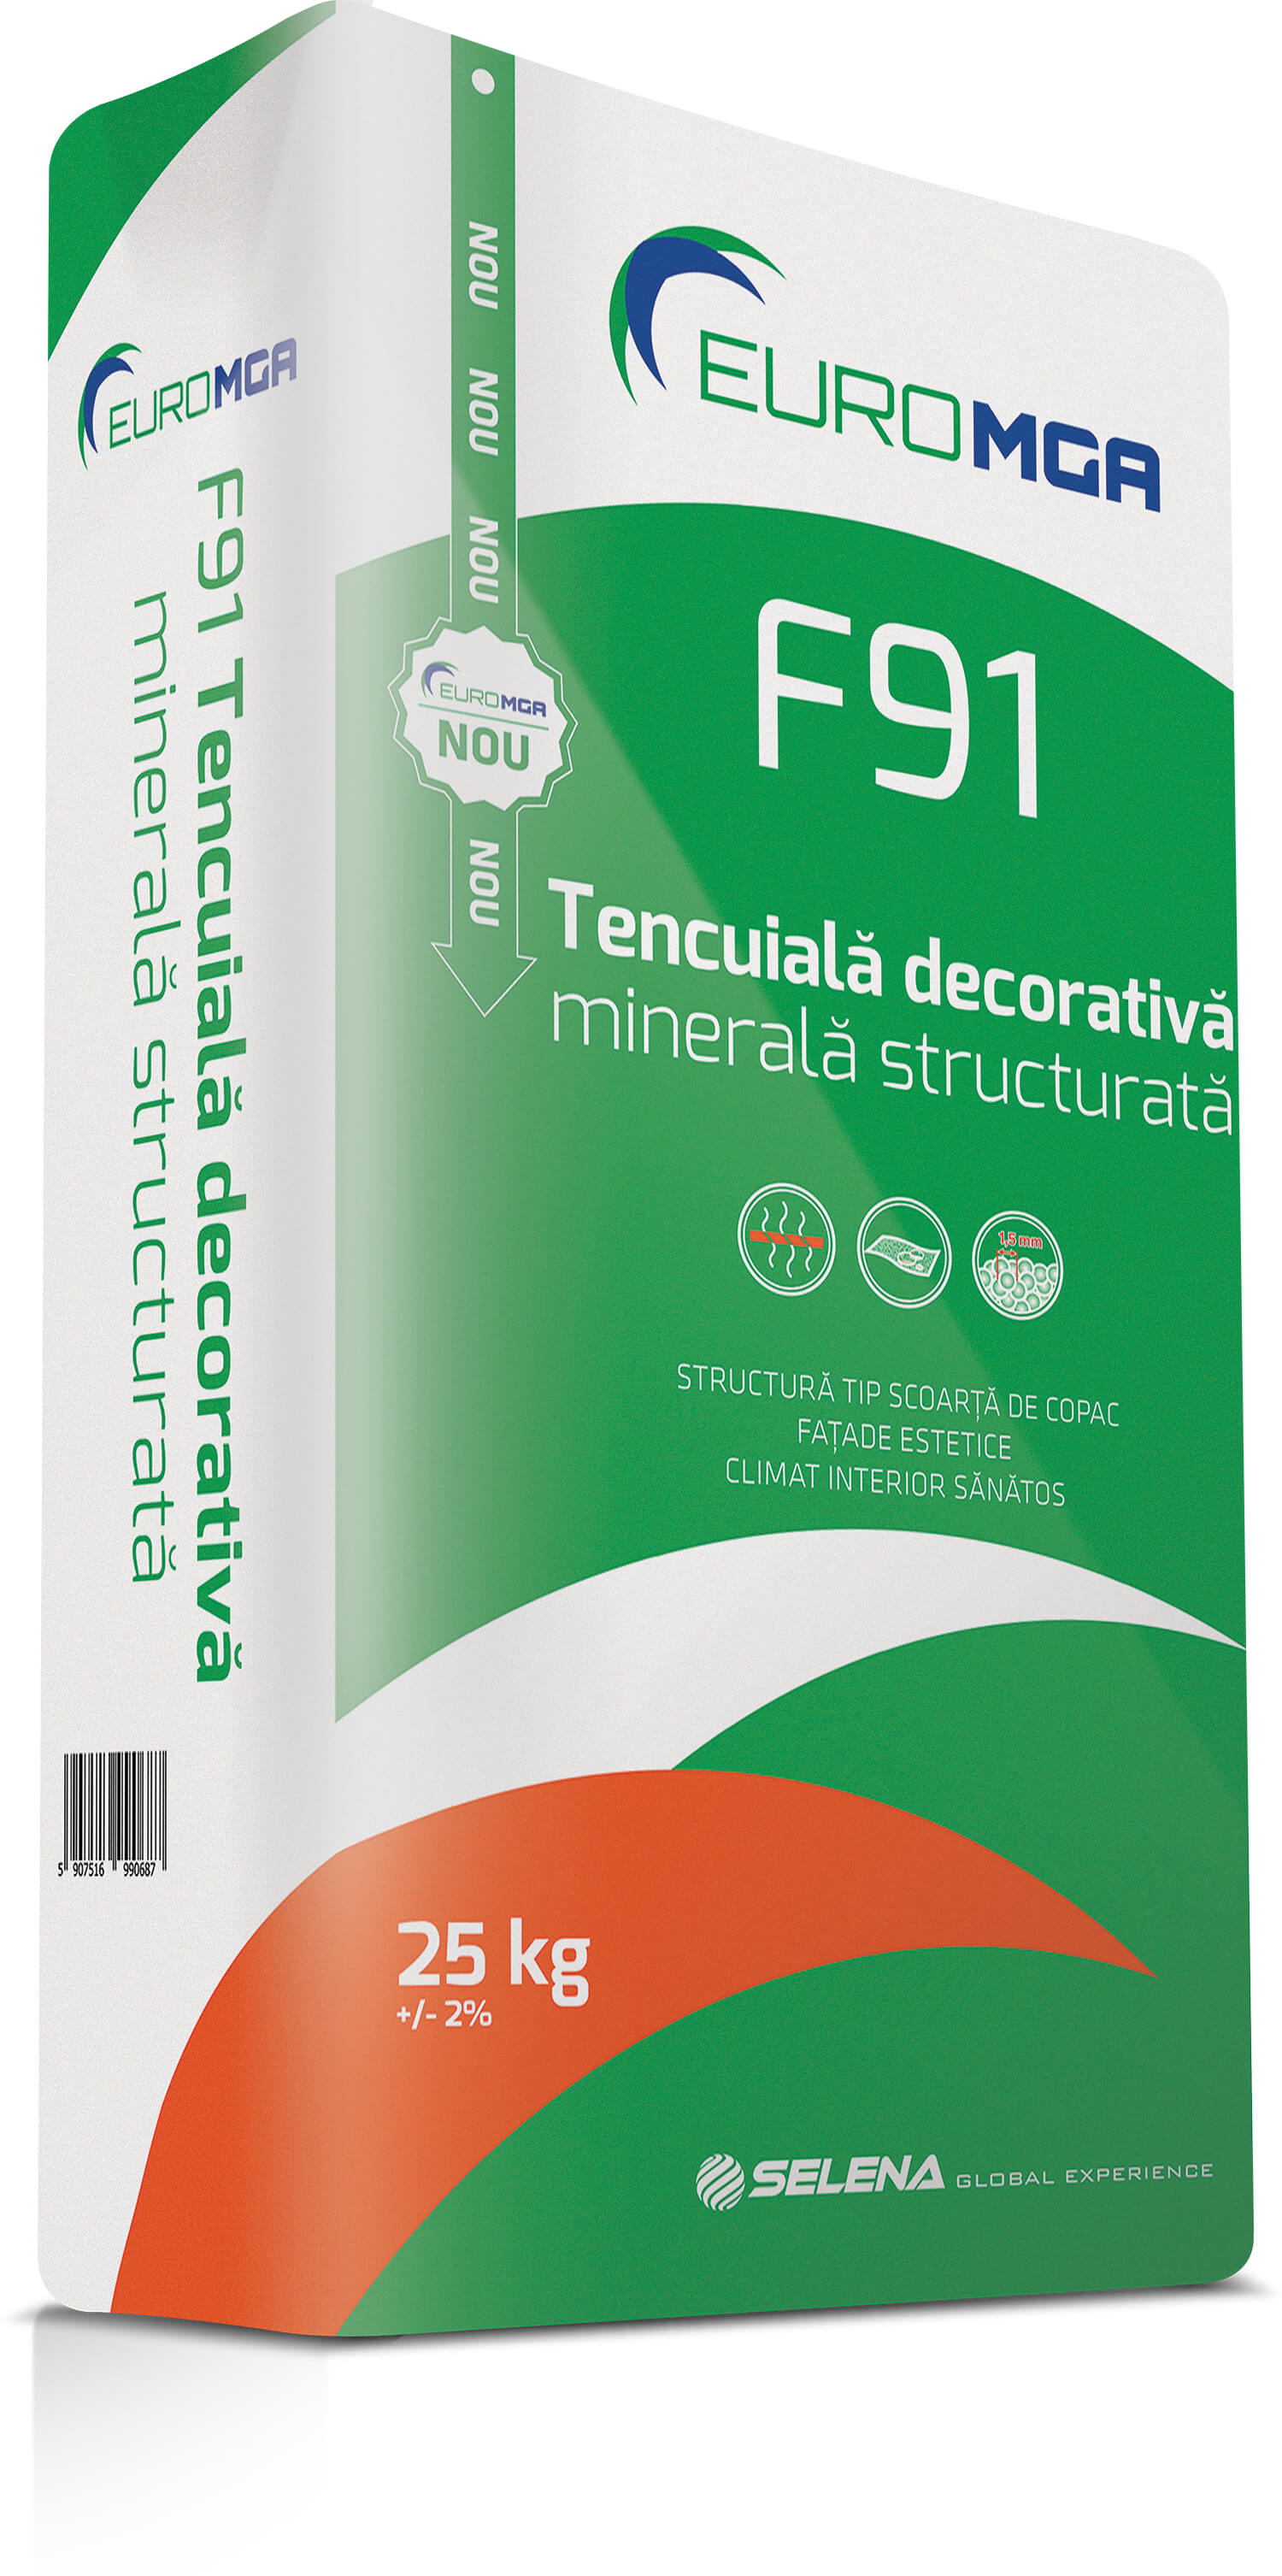 Tencuieli decorative - Tencuiala decorativa minerala structurata F91 EuroMGA 2.5mm 25KG, maxbau.ro